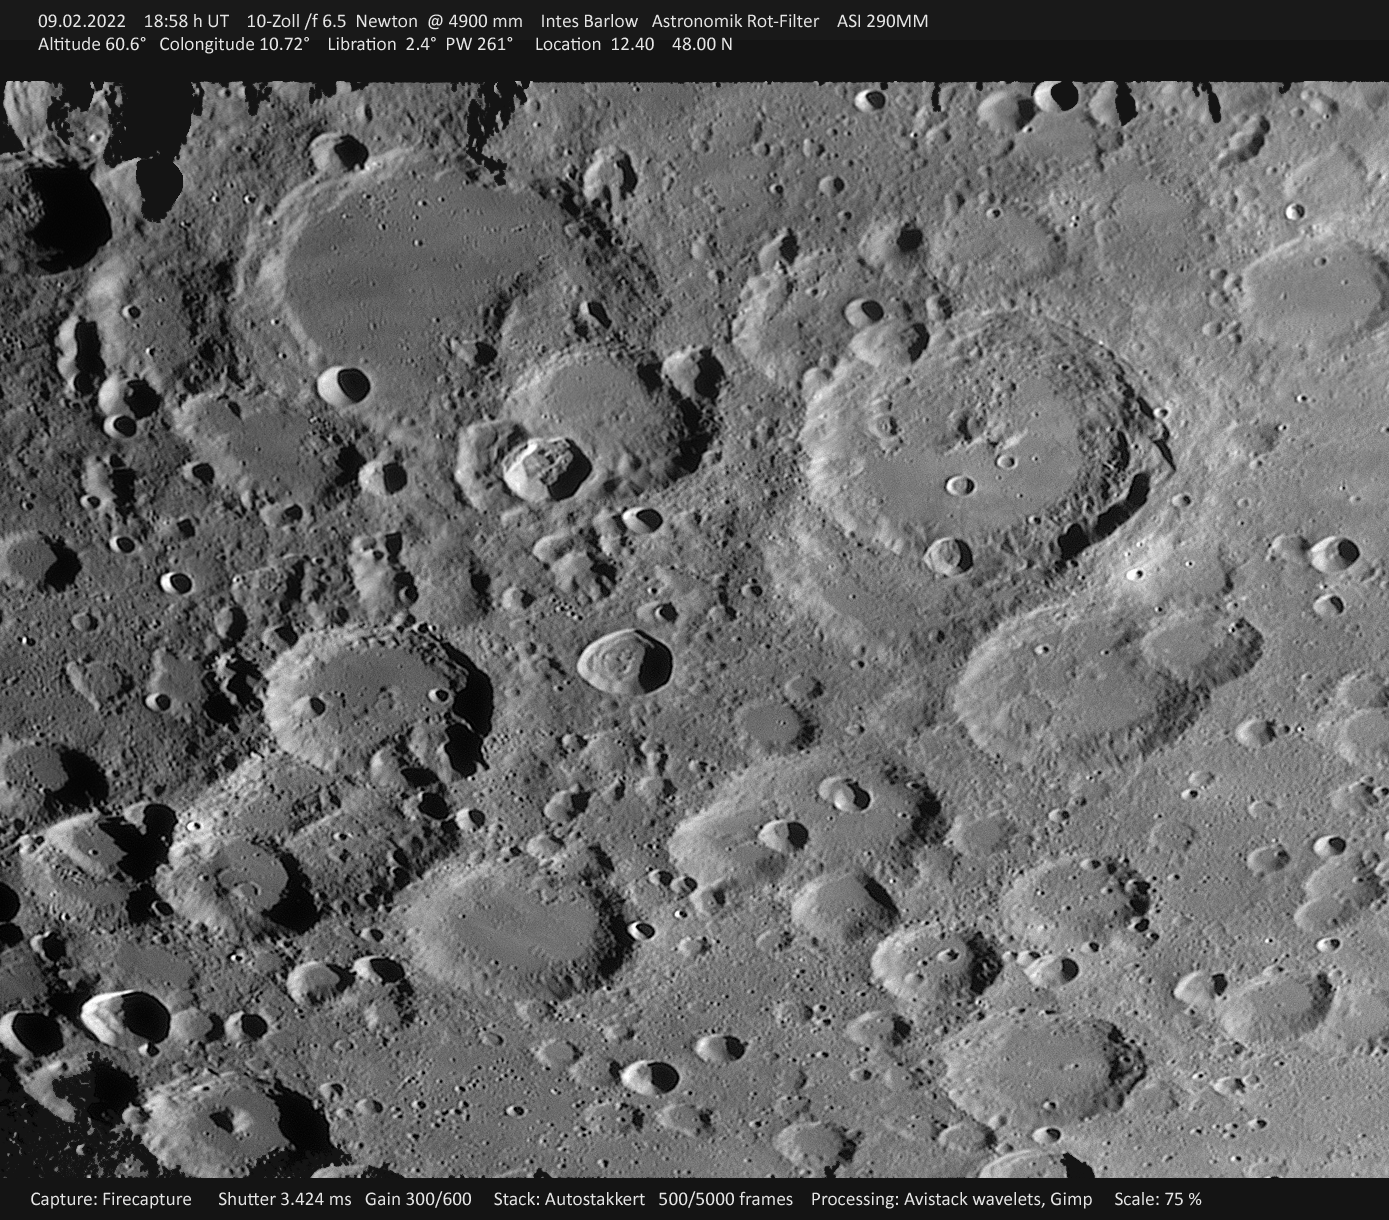 Mond_2022-02-09-1858